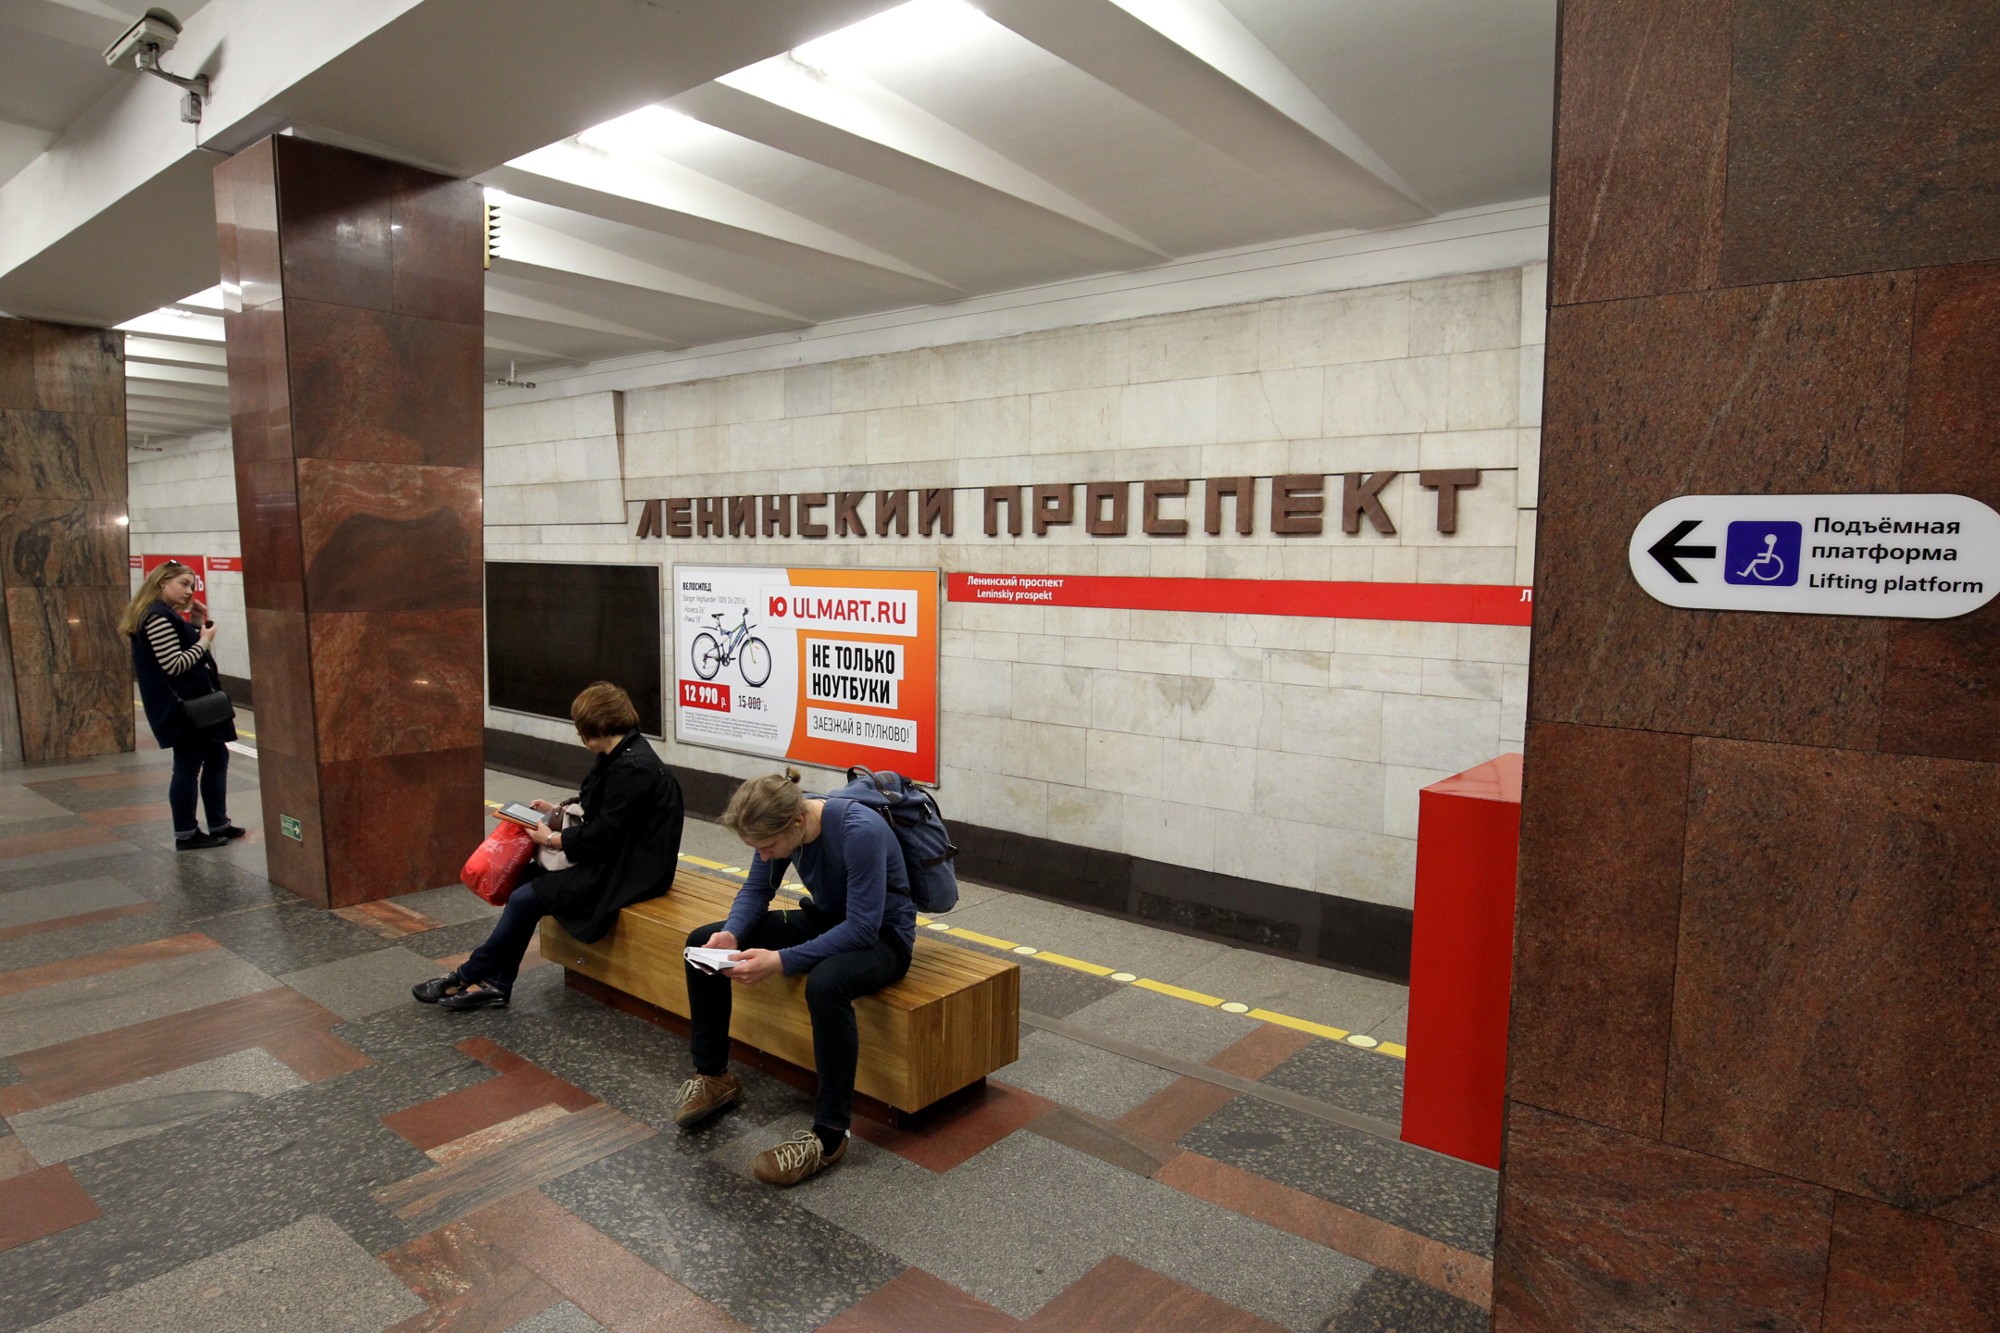 фото на документы метро ленинский проспект